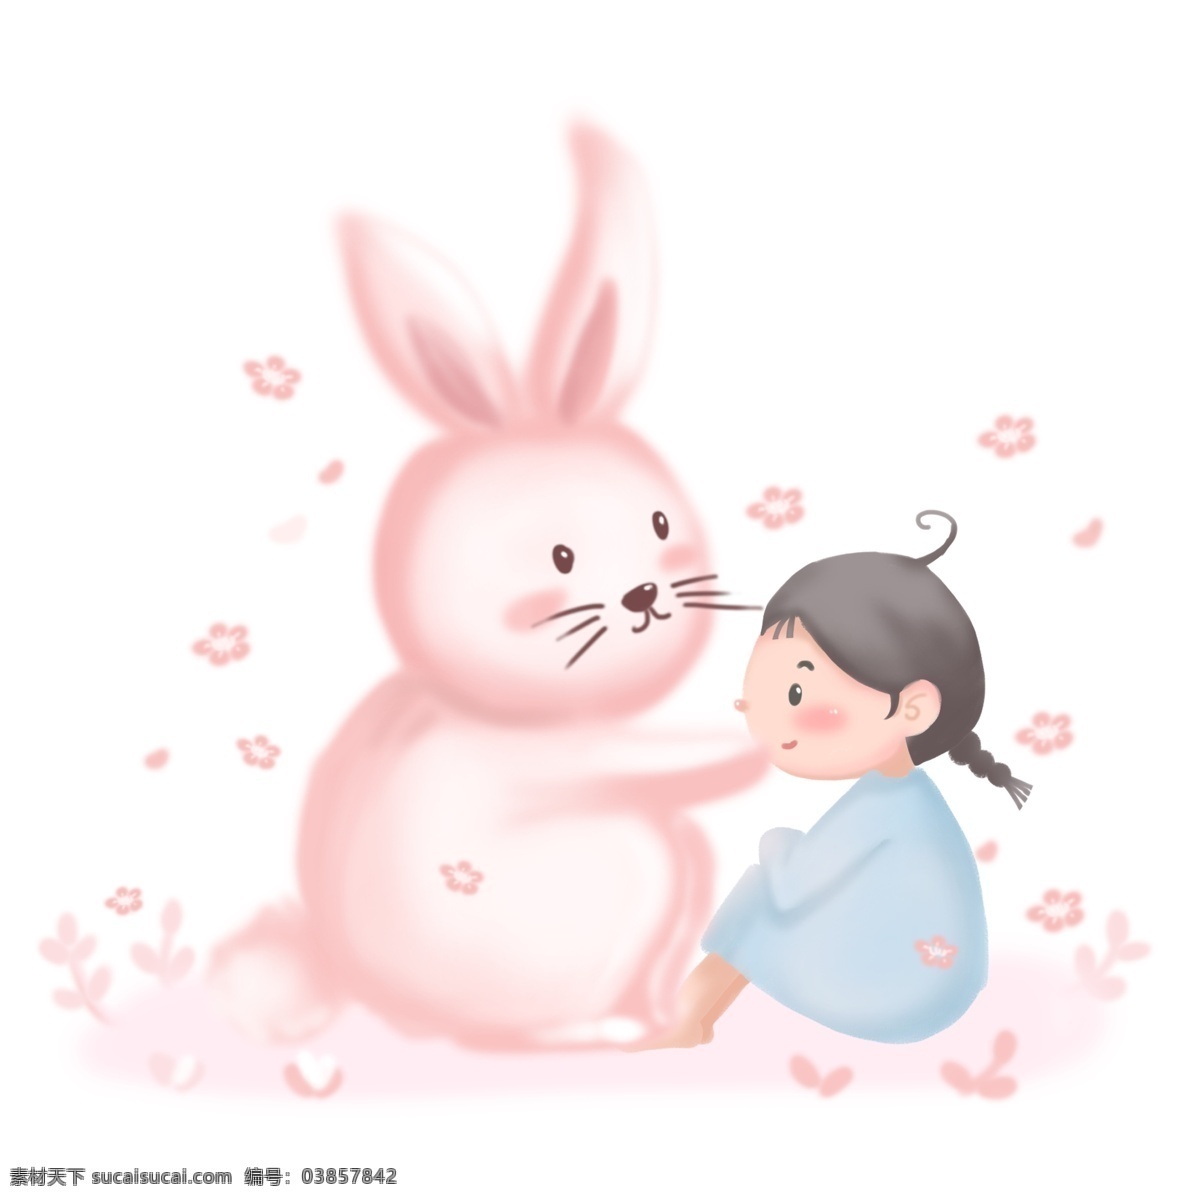 卡通 手绘 梦幻 插画 梦境 动物 可爱小女孩 森系女孩 萌系 粉色系列 可爱小兔子 童话故事插画